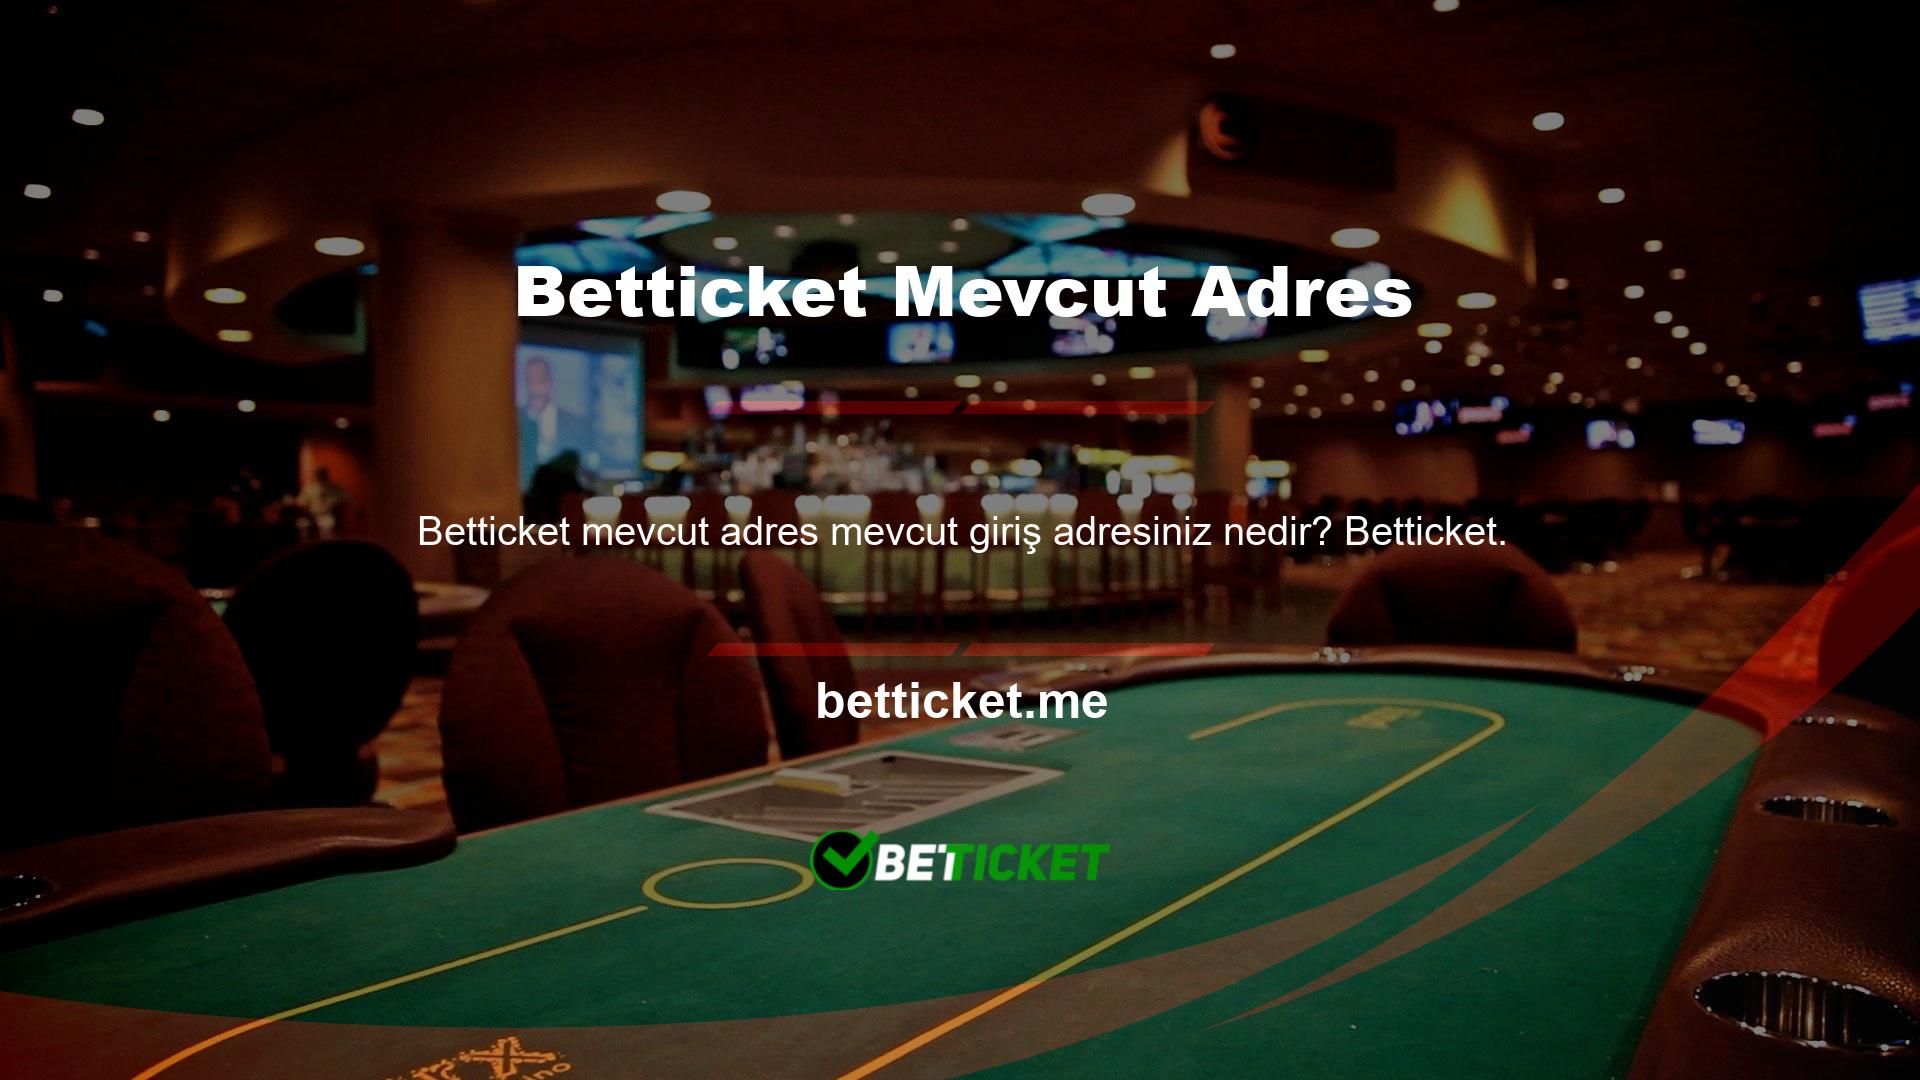 Casino Betticket bahis sitesi, geniş hizmet yelpazesi ve birçok seçenek sunan en kapsamlı bahis sitelerinden biridir